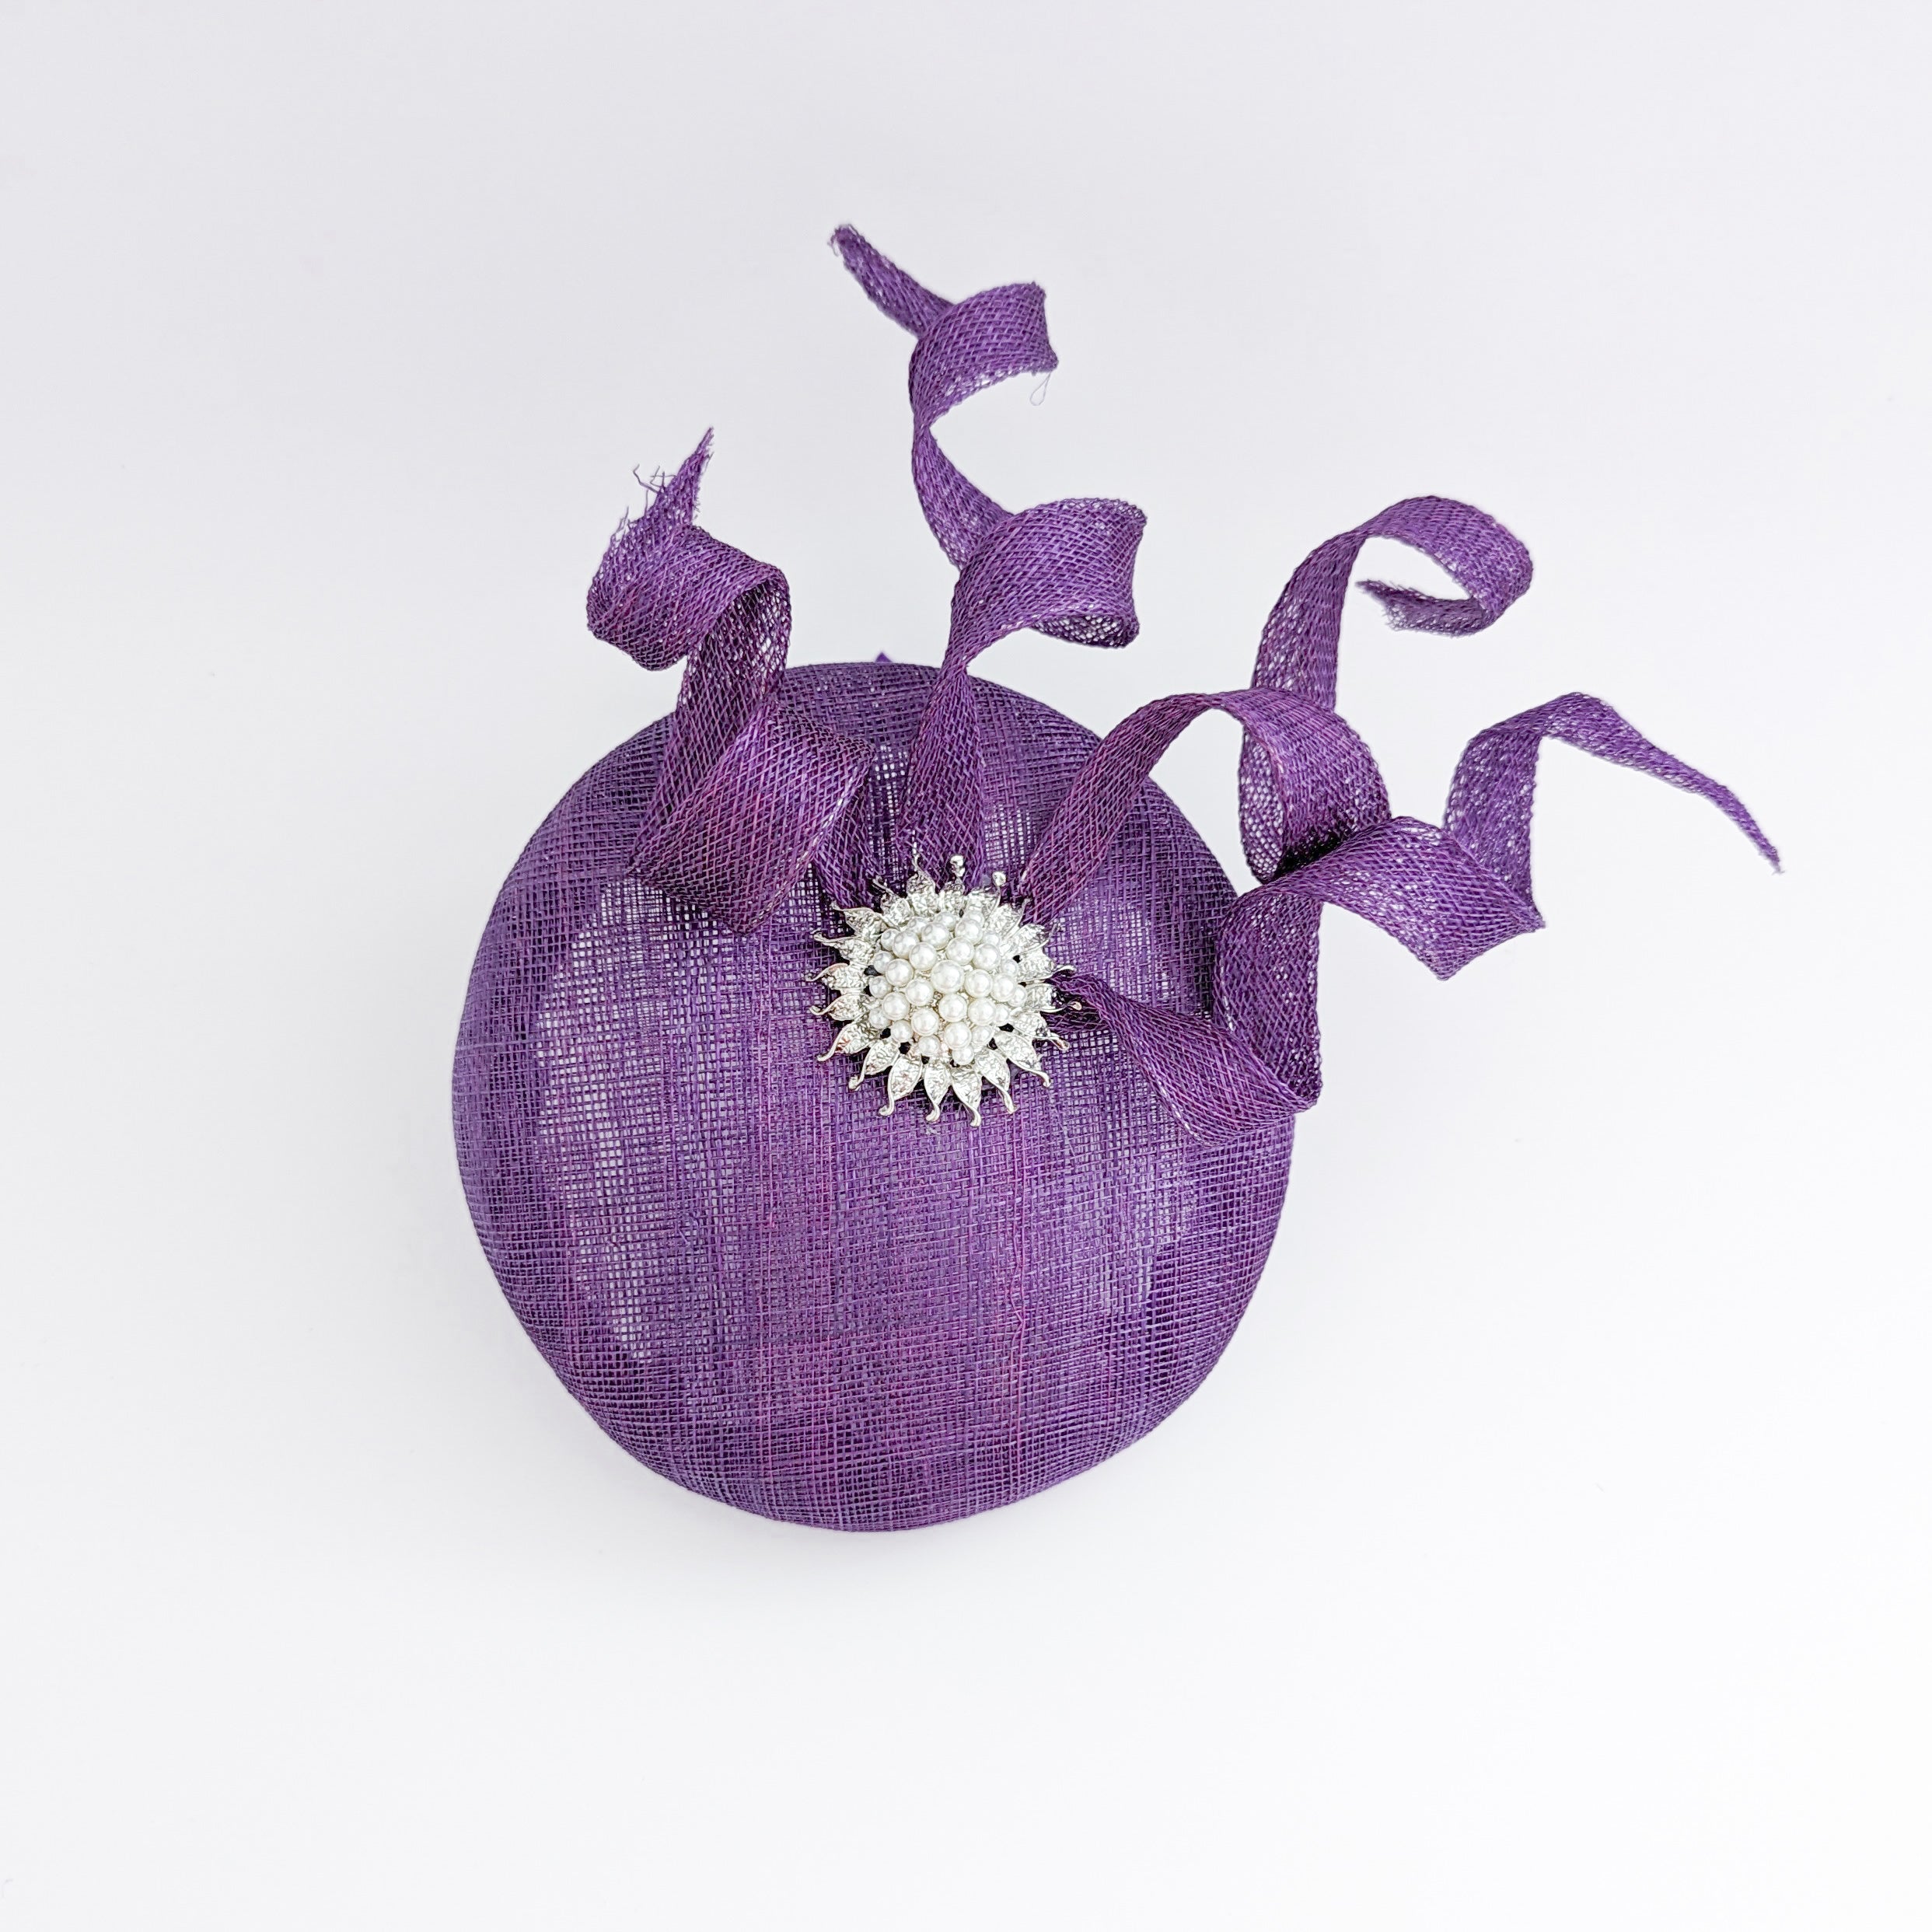 Aubergine purple pearl fascinator hat